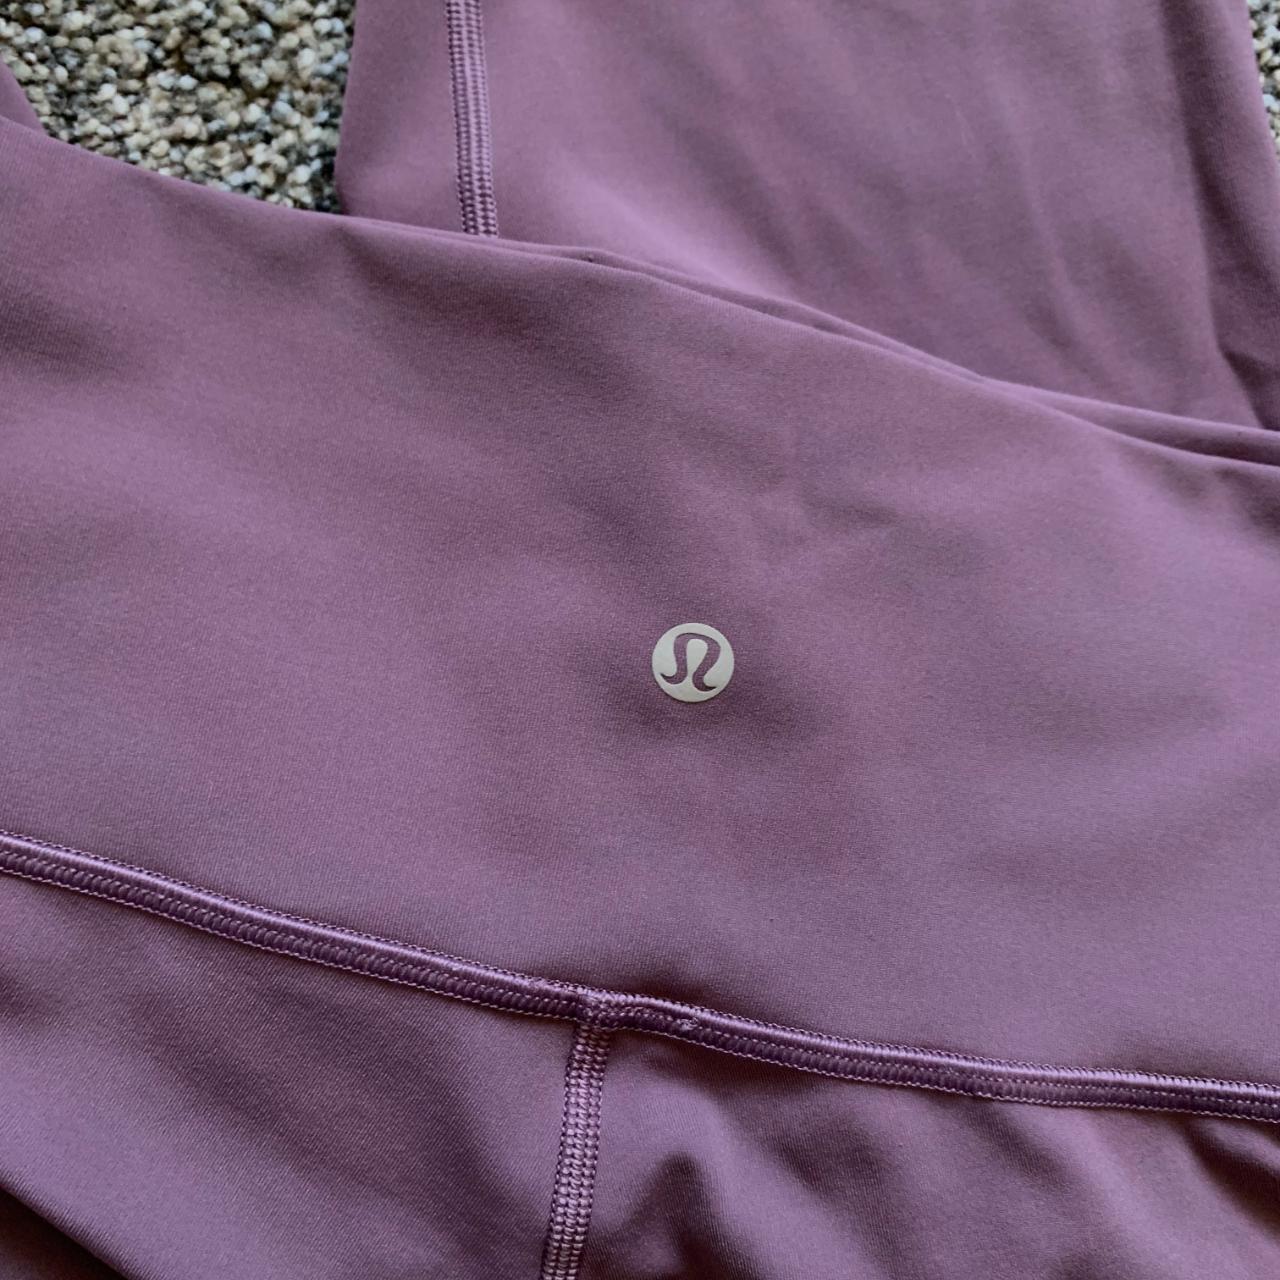 Light purple Lululemon leggings , Worn multiple times